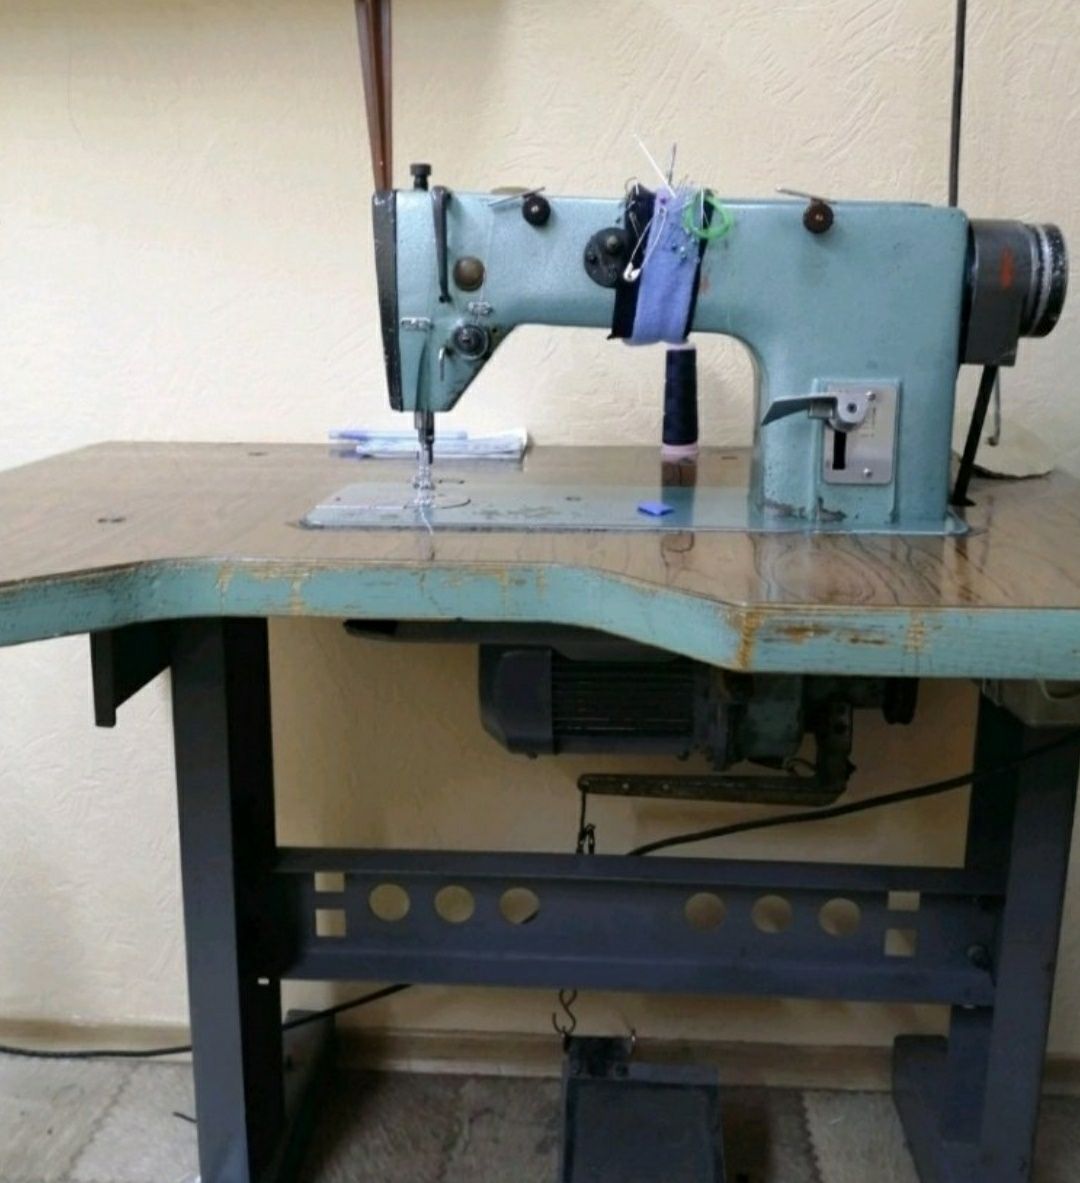 Швейная машинка 1022. 1022м швейная машина. Промышленная швейная машинка 1022. Швейная машинка Промышленная кл 1022. Швейная машина 1022 м класса.